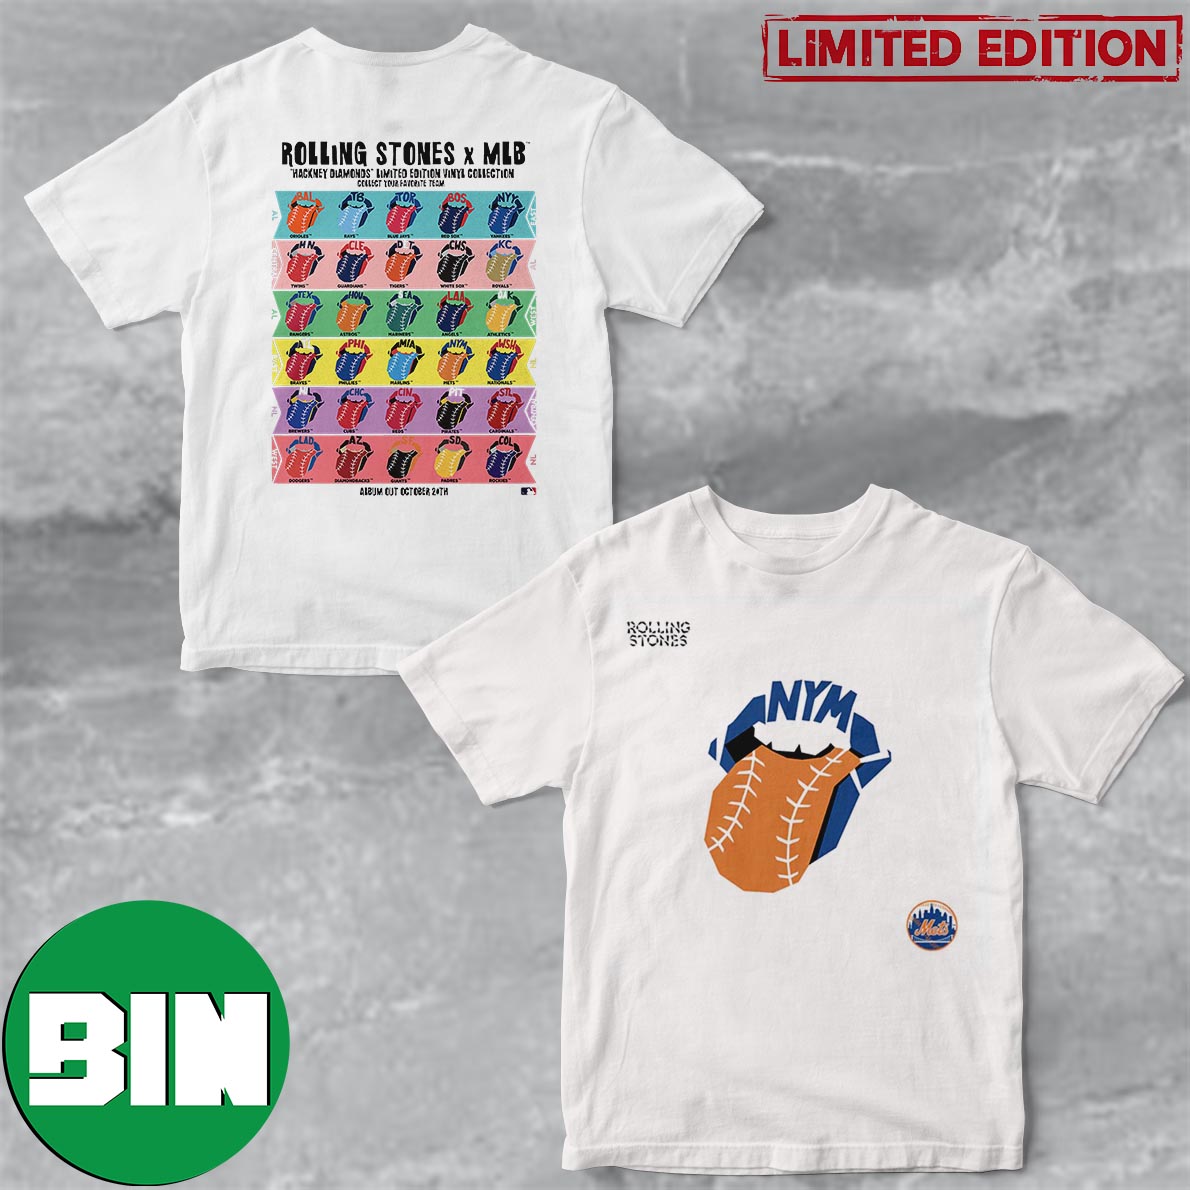 New York Lettering Print MLB T-Shirt